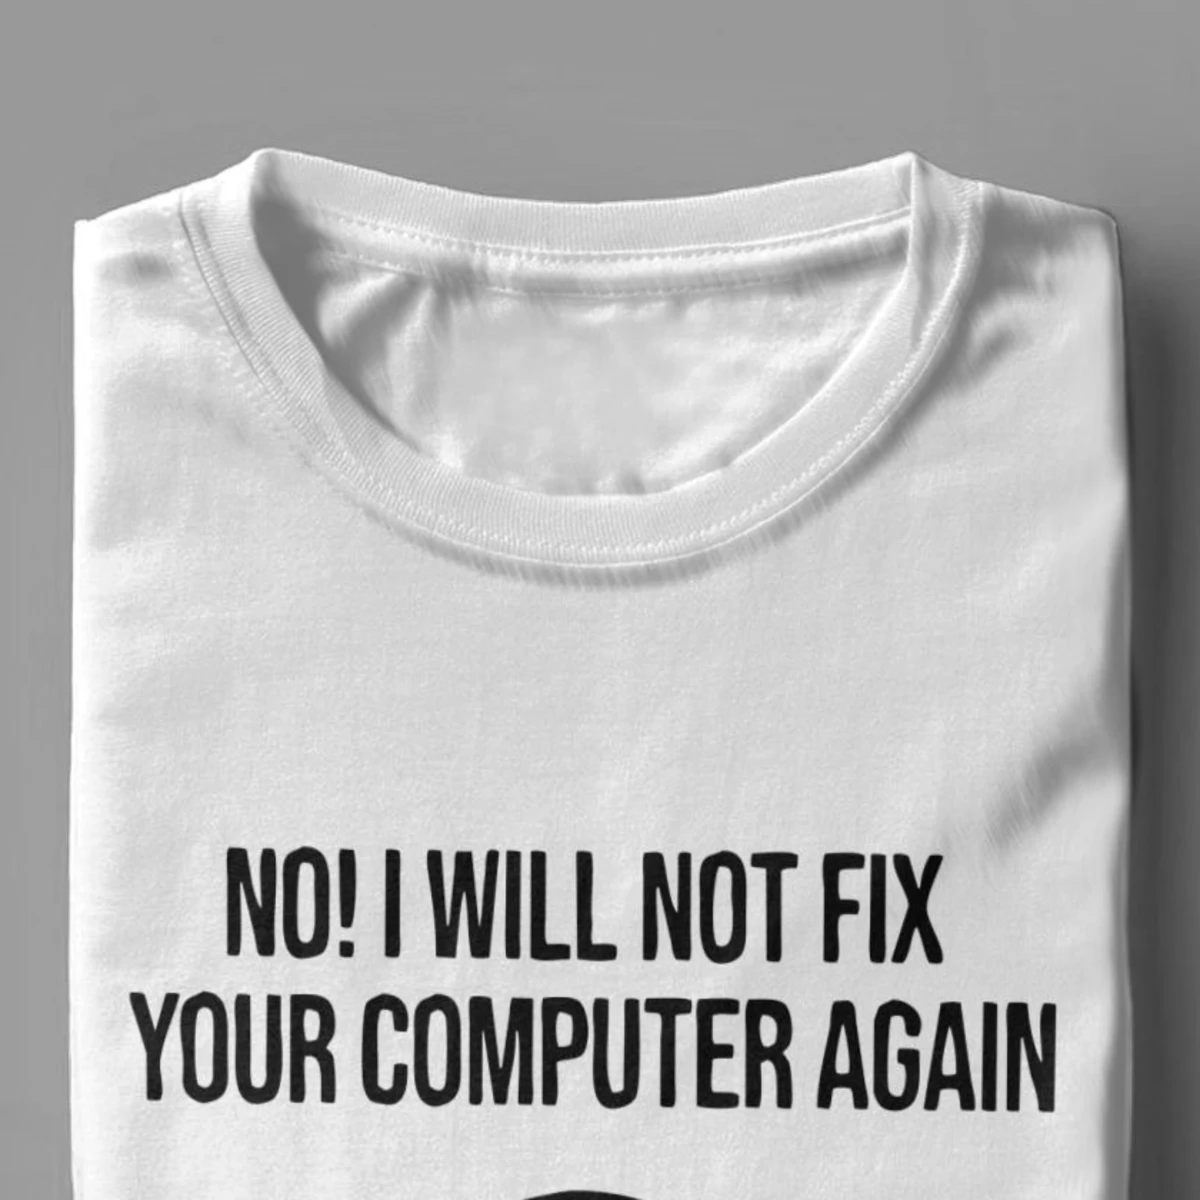 Swith Linux Angry Tučniak Tux T Košele Mužov Novinka Topy T Shirt Programátor Počítač Developer Geek, Blbecek Tshirts